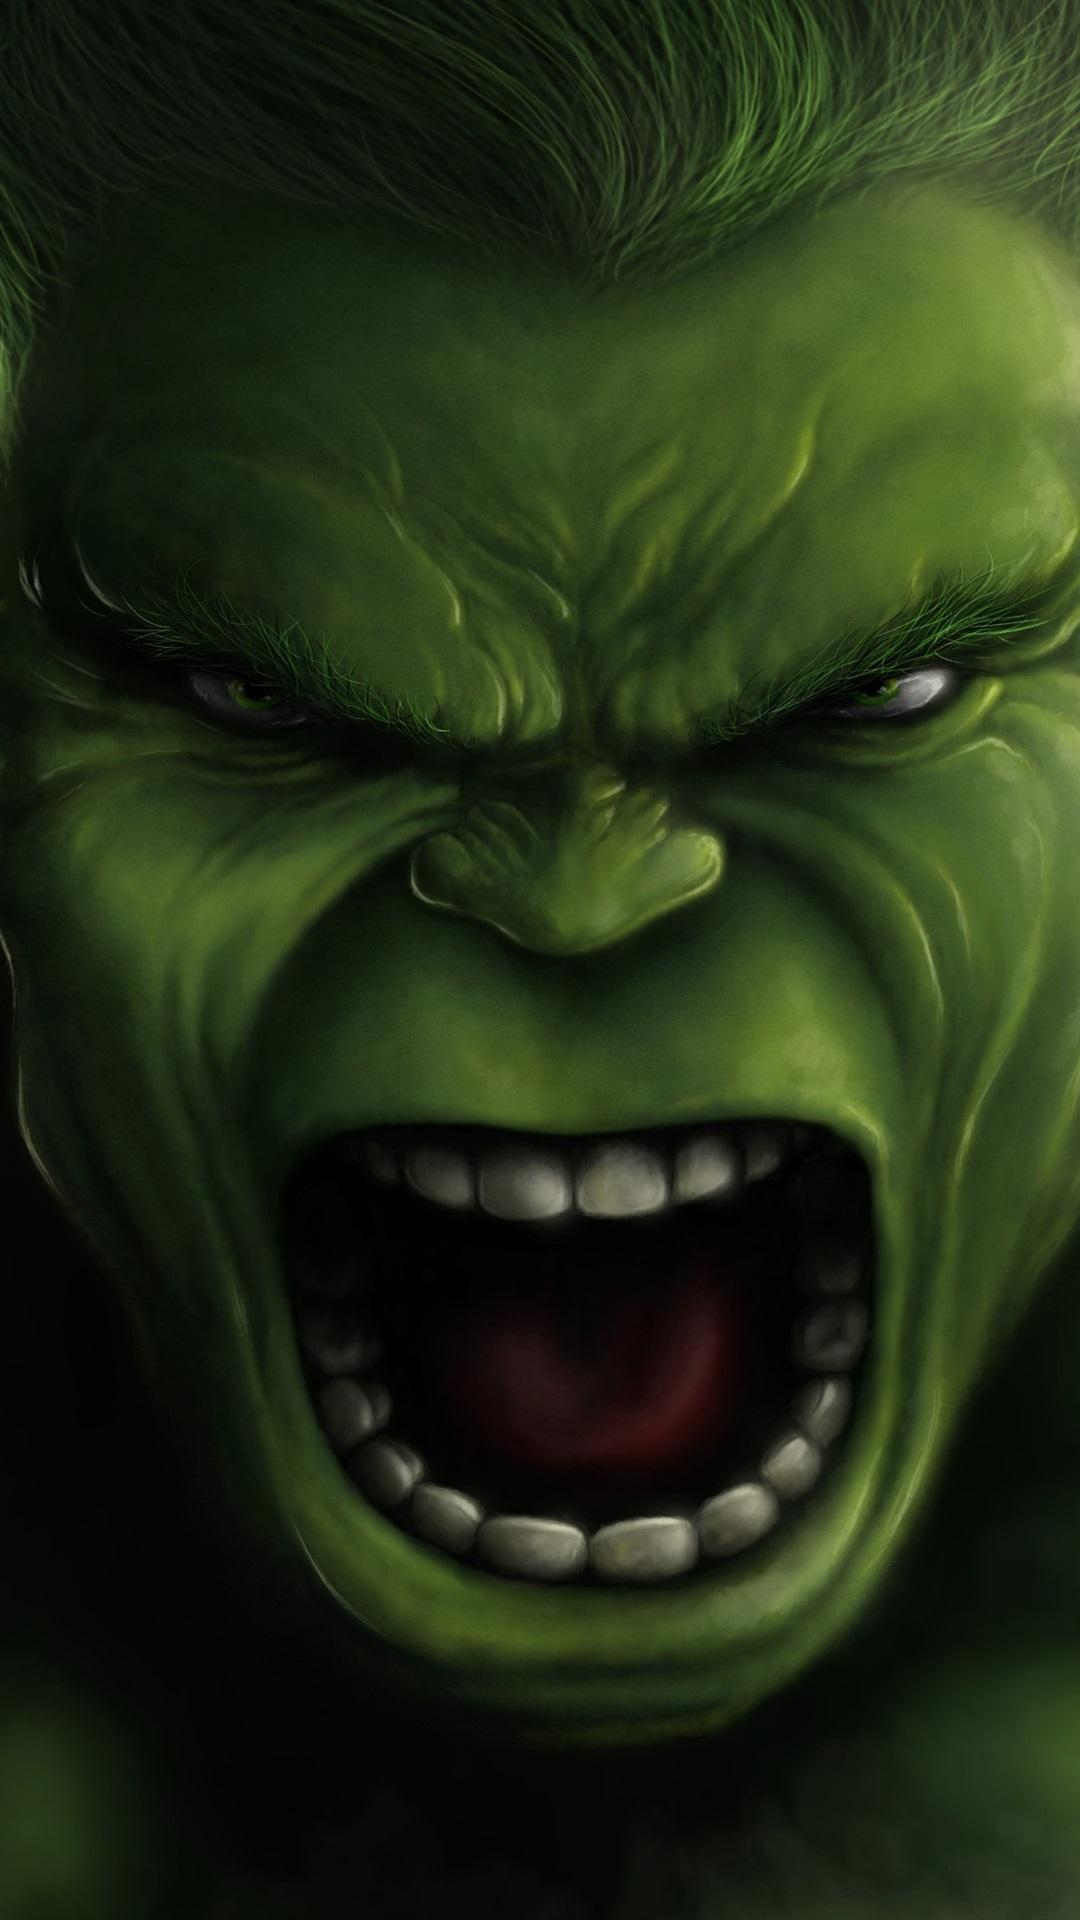 hulk cartoon face